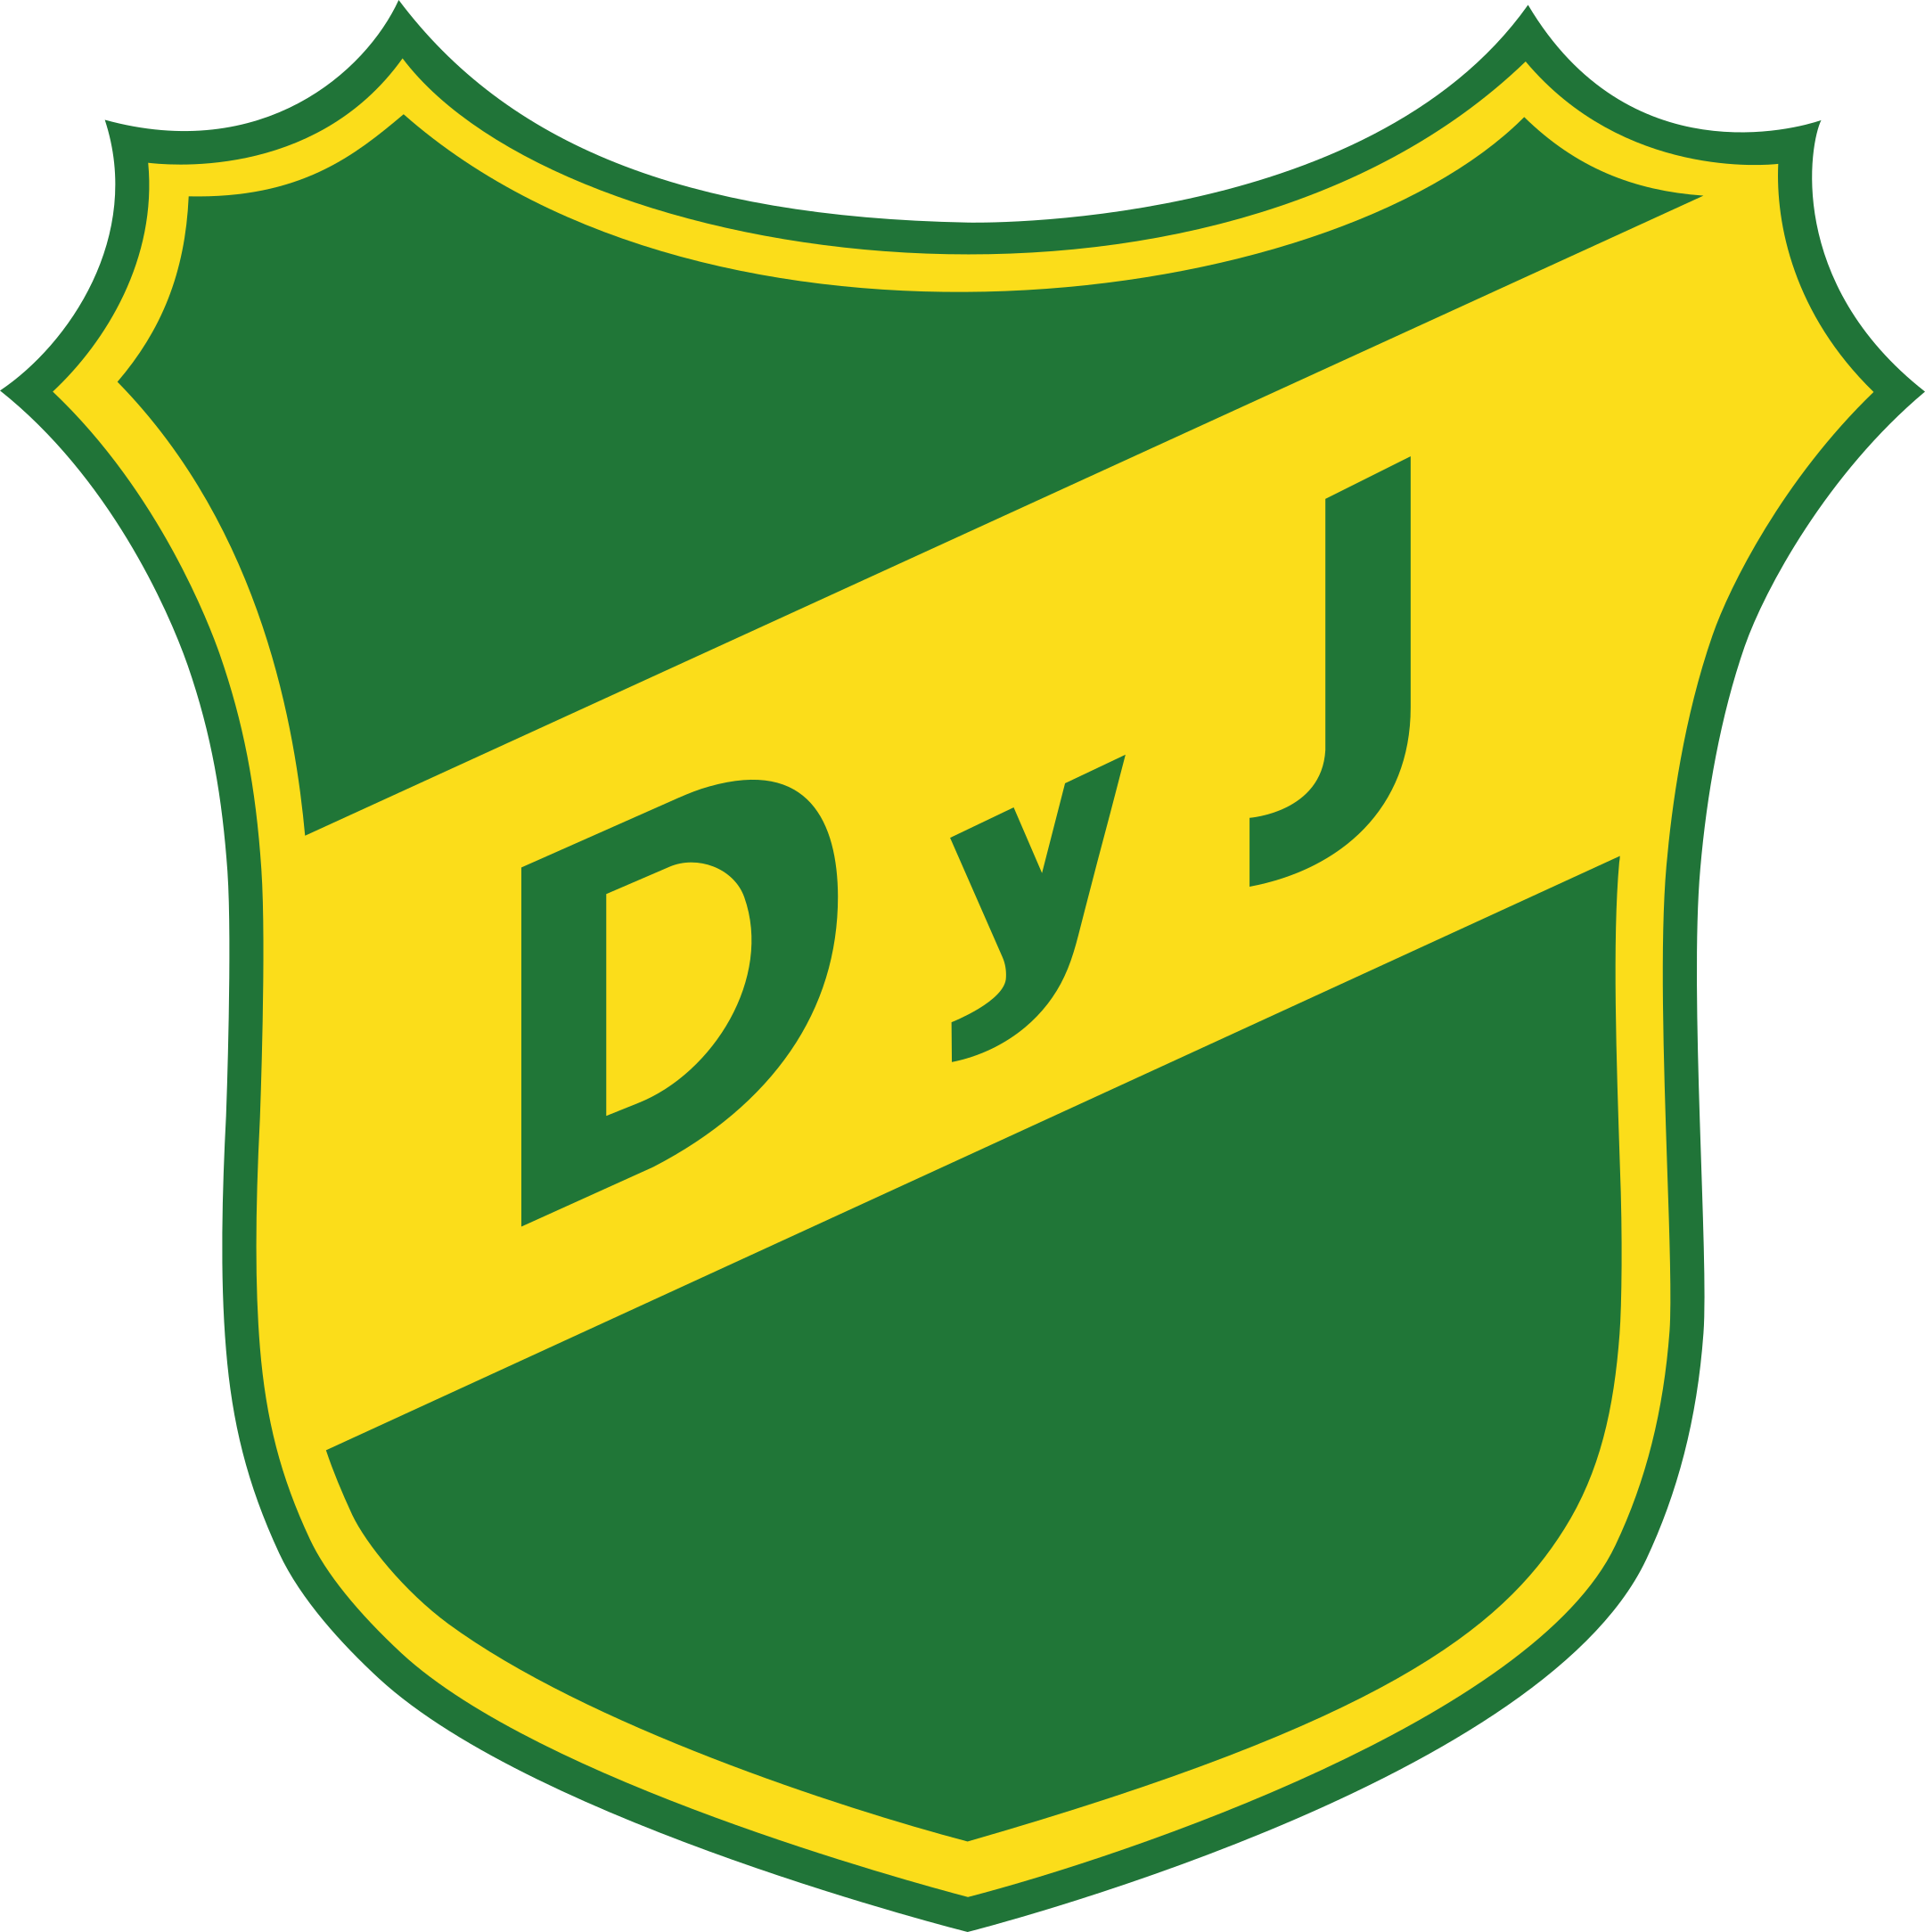 defensa y justicia logo 1 - Defensa y Justicia Logo